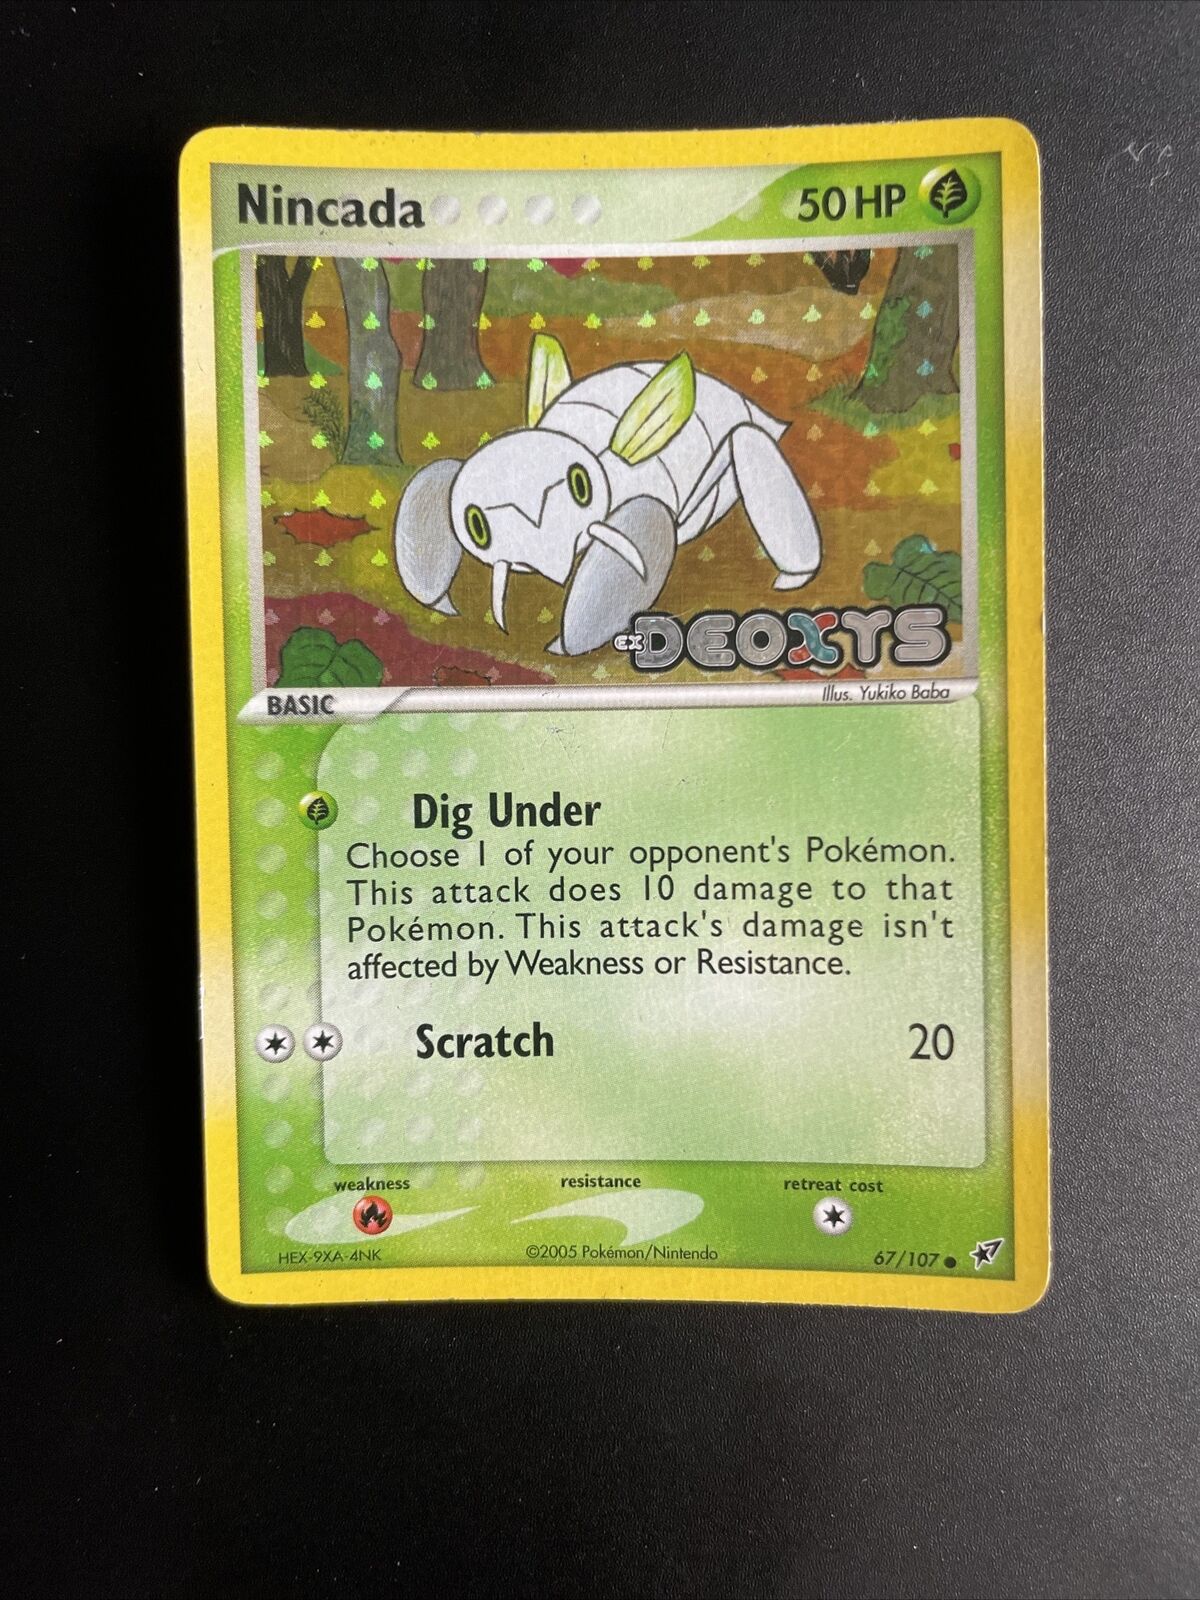 Original Pokémon TCG Nincada Ex Deoxys Set Card 67/107 Reverse Holo Stamped LP